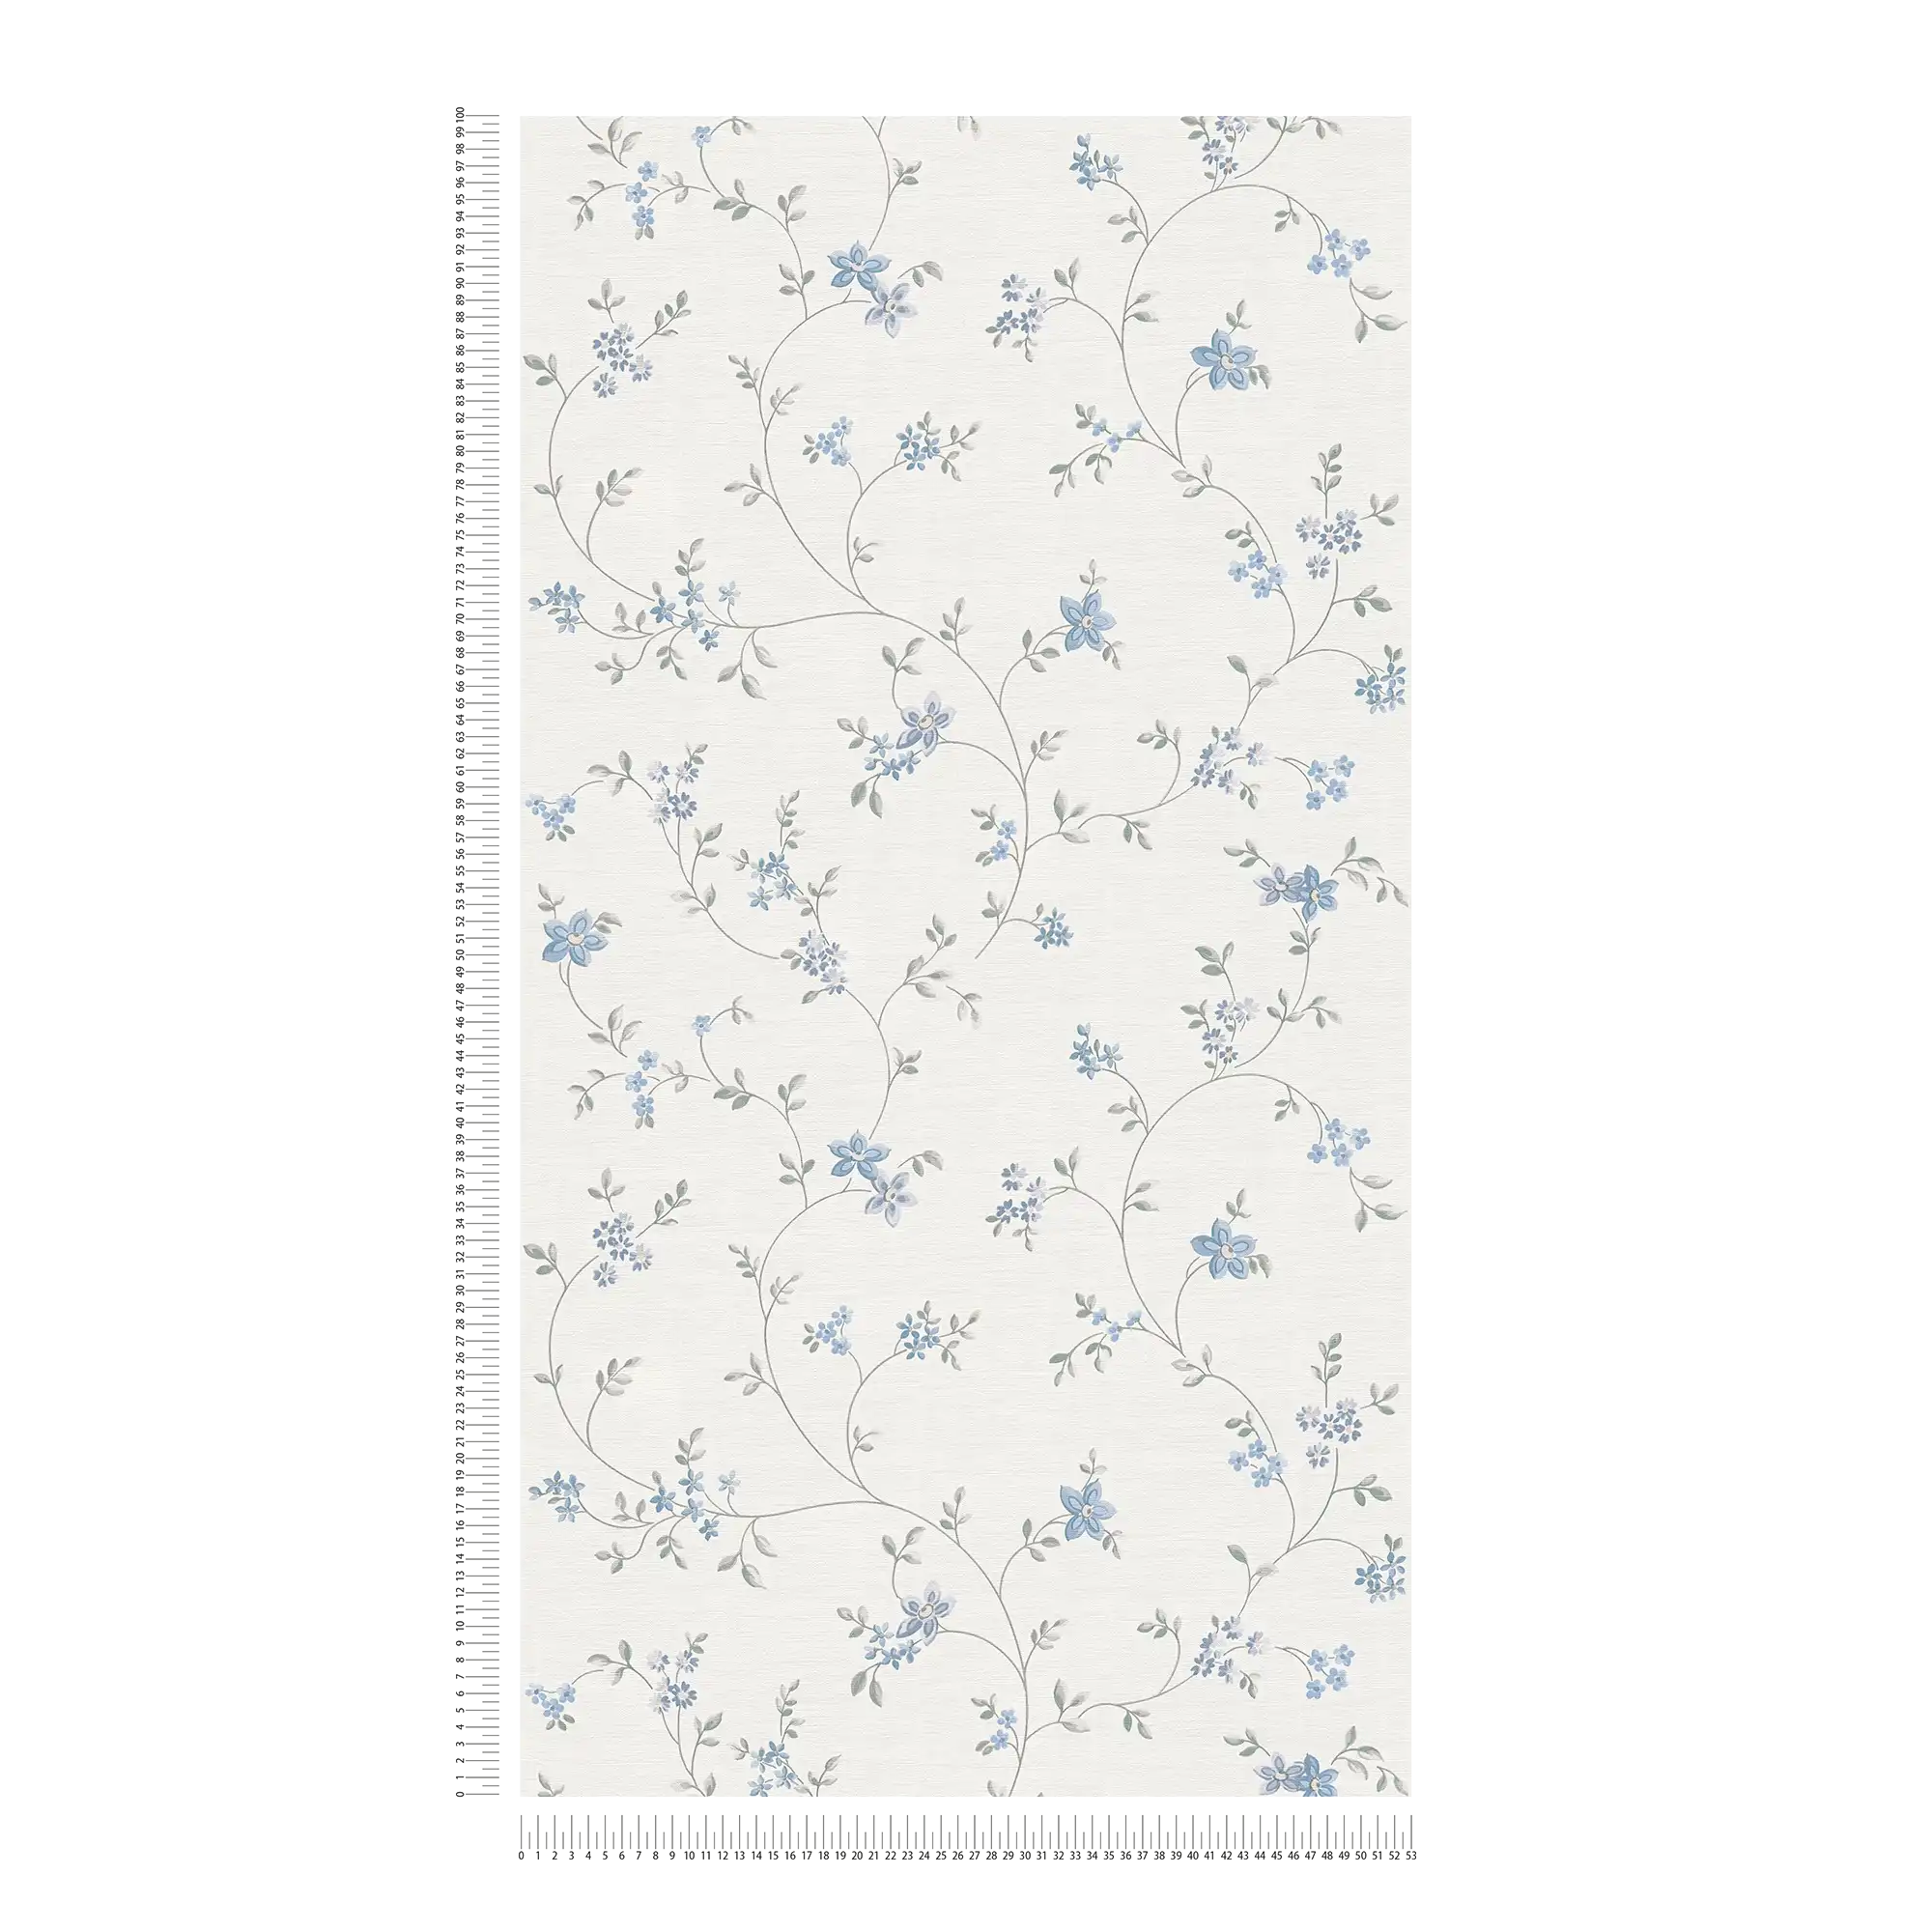             Vliesbehang met bloemenranken in landelijke stijl - crème, grijs, blauw
        